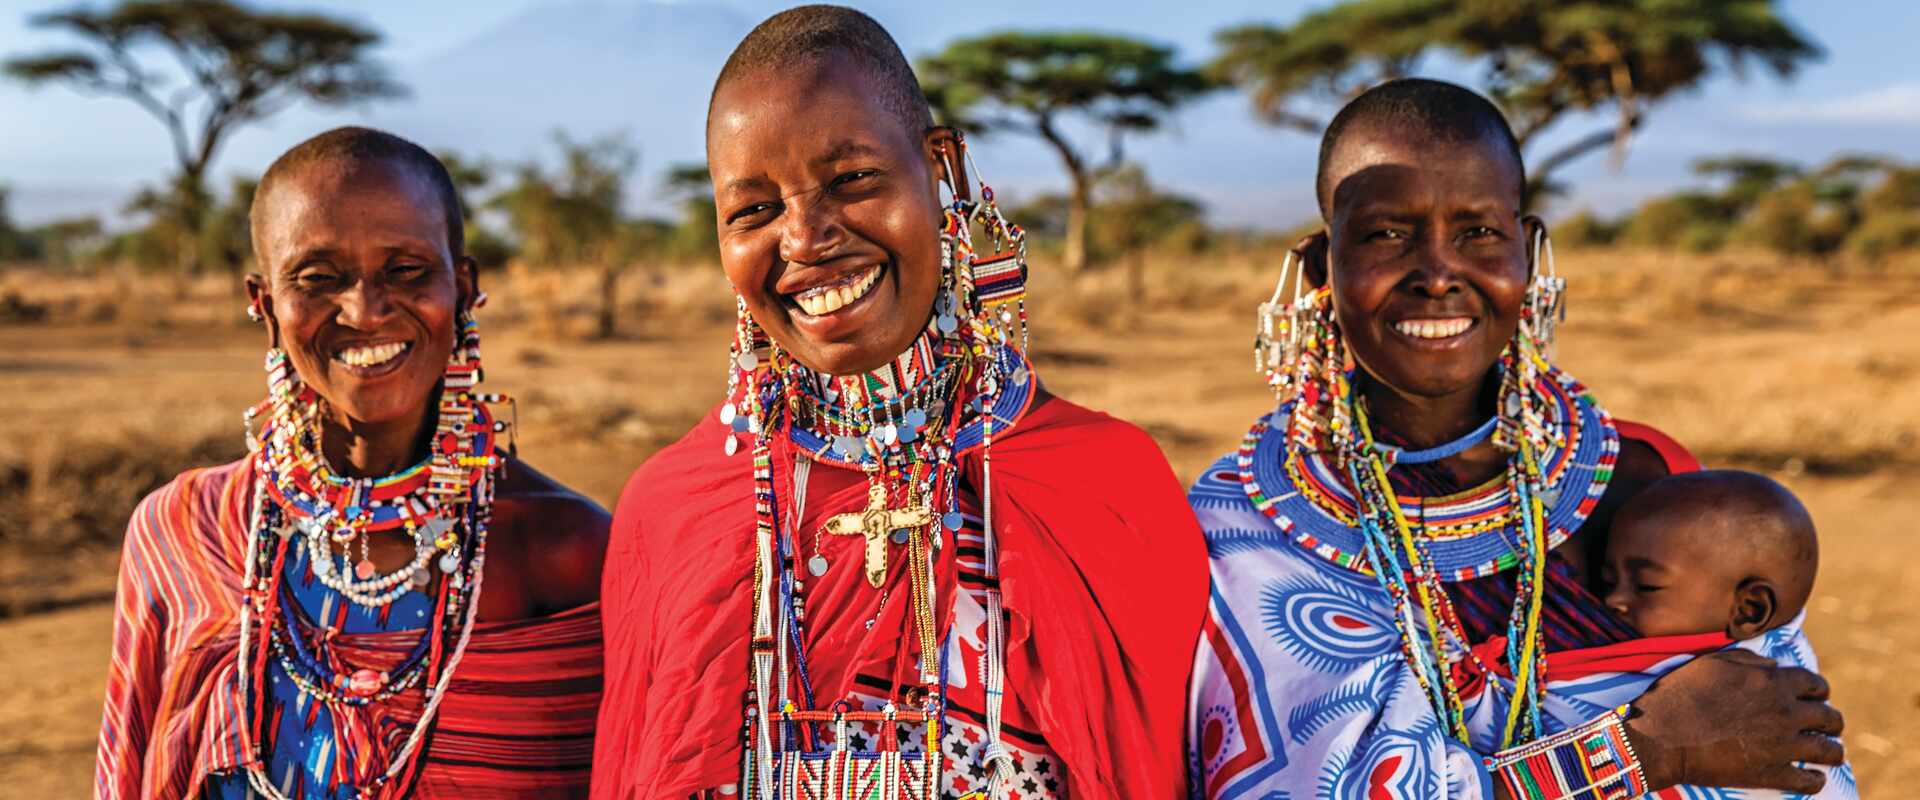 Maasai Mara Women, Kenya